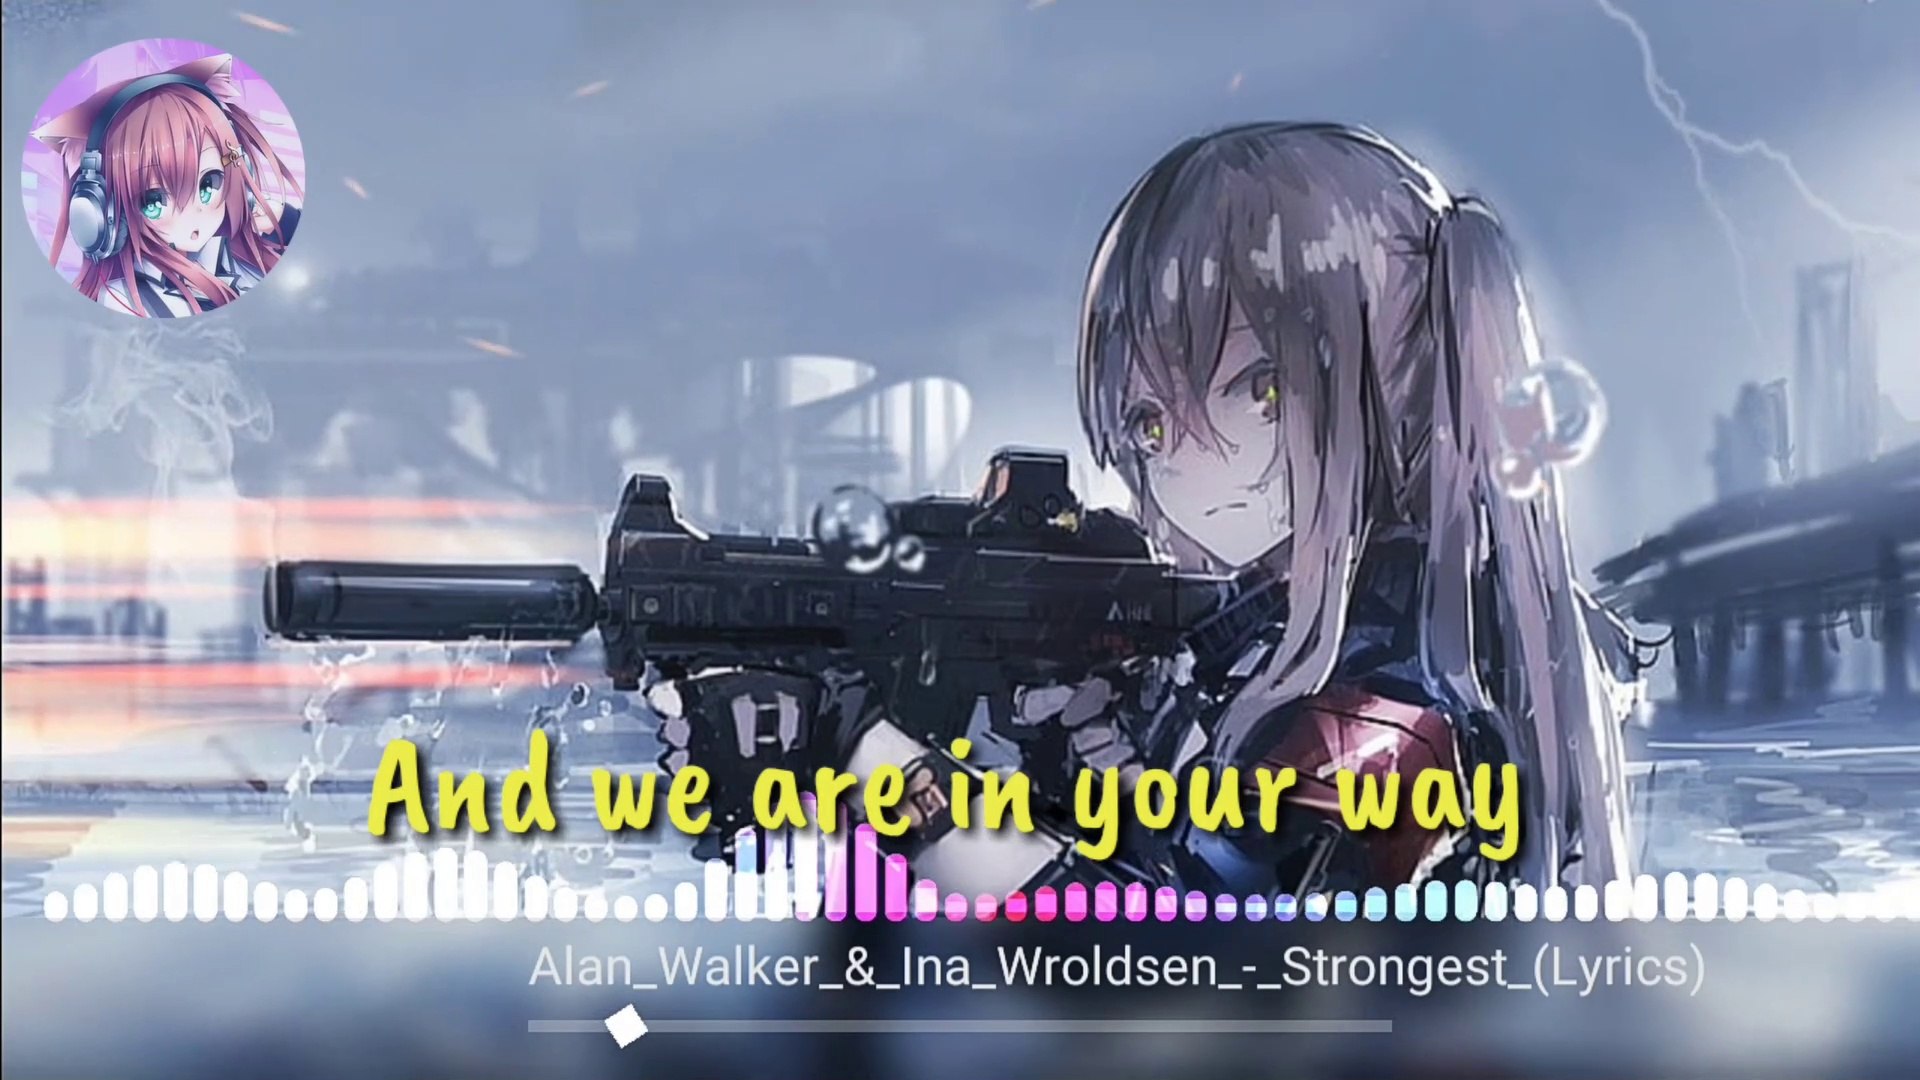 Ina Wroldsen (Alan Walker Remix) - Strongest